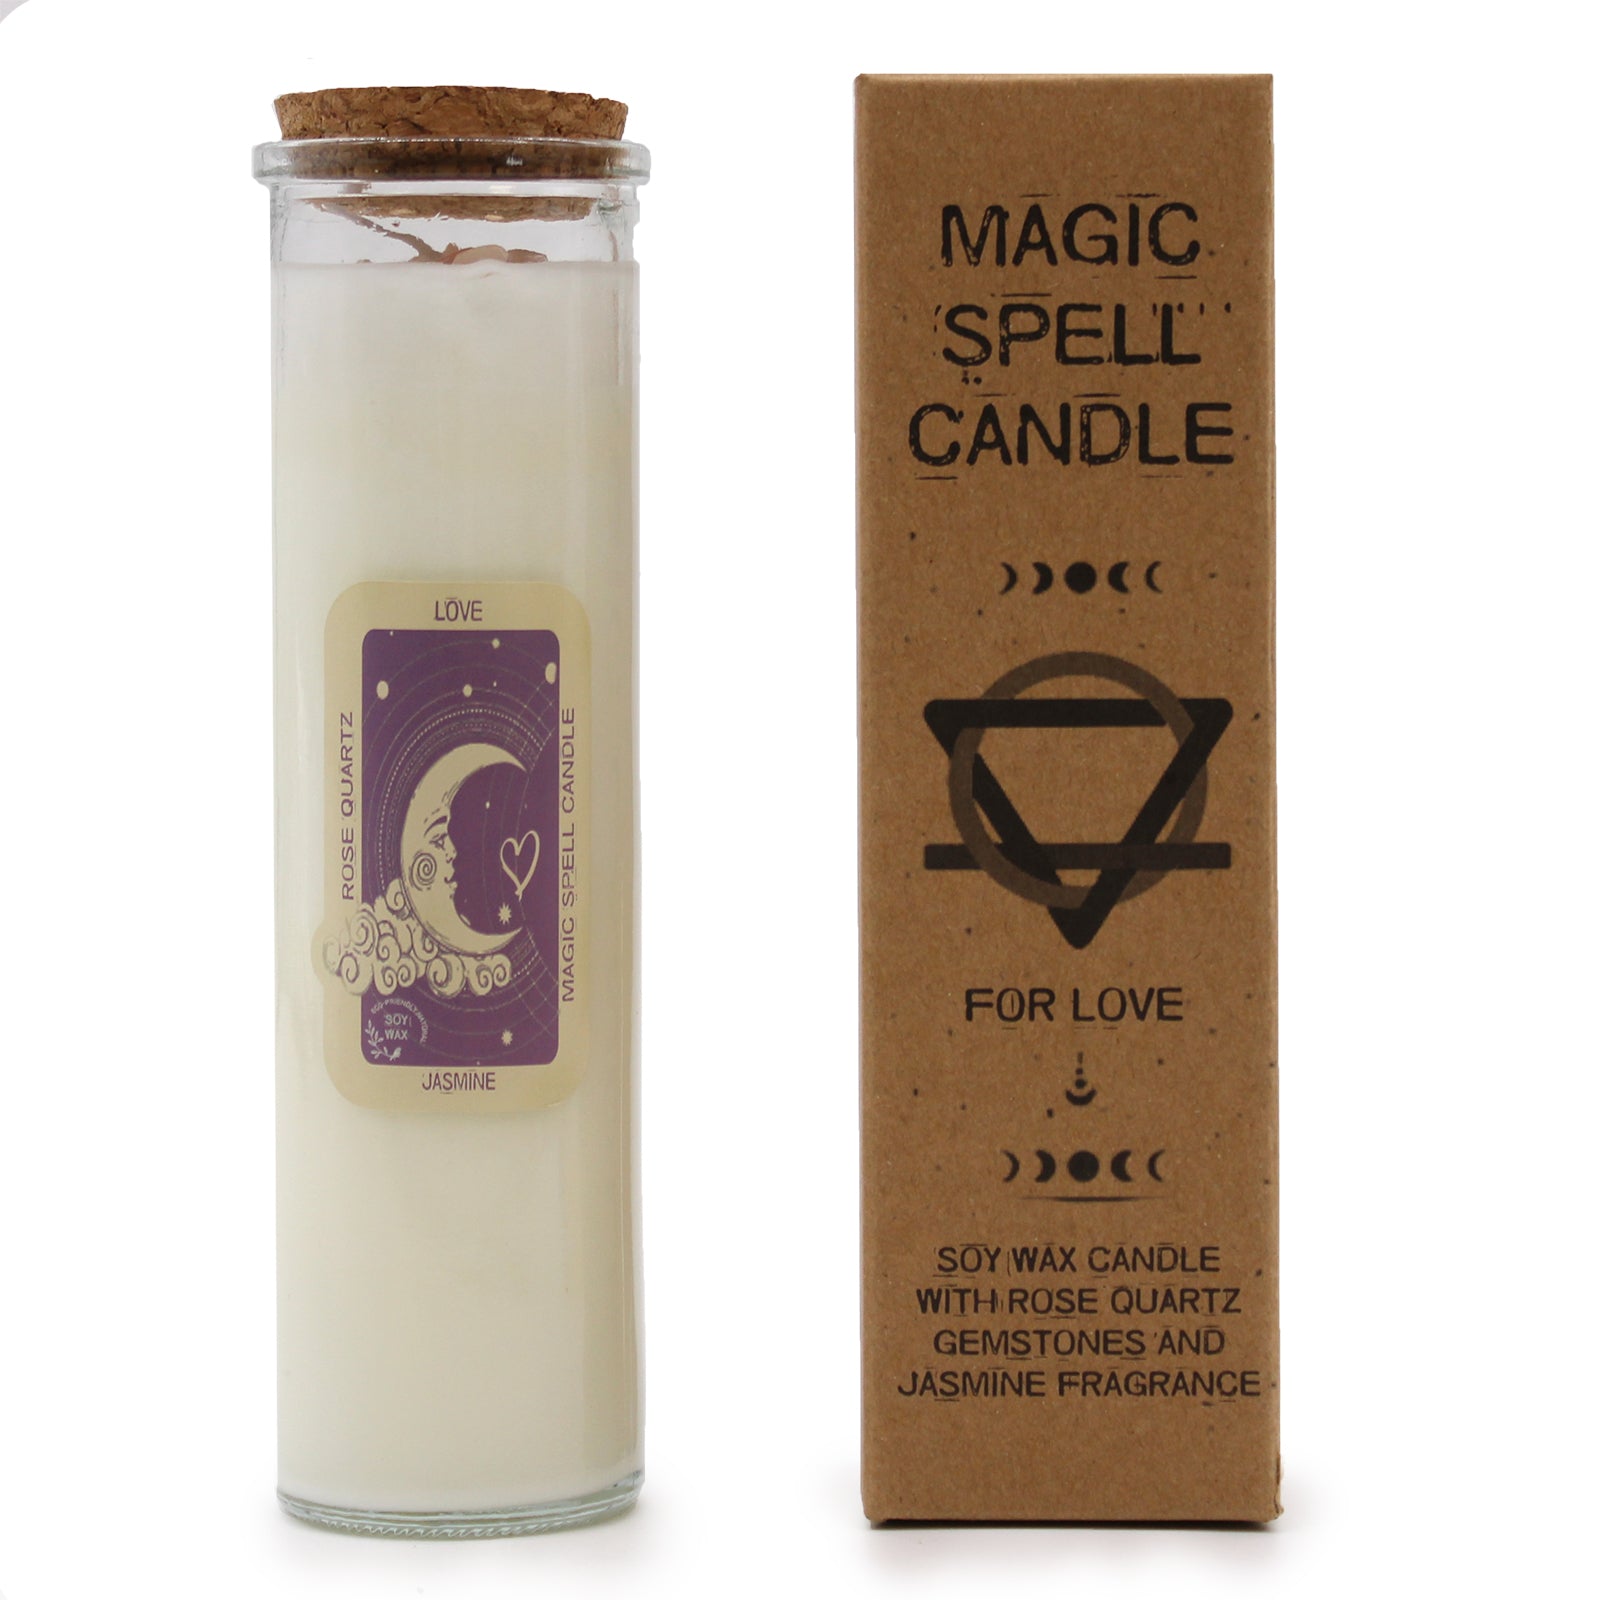 Magic Spell Candle - Love - Rose Quartz and Jasmine